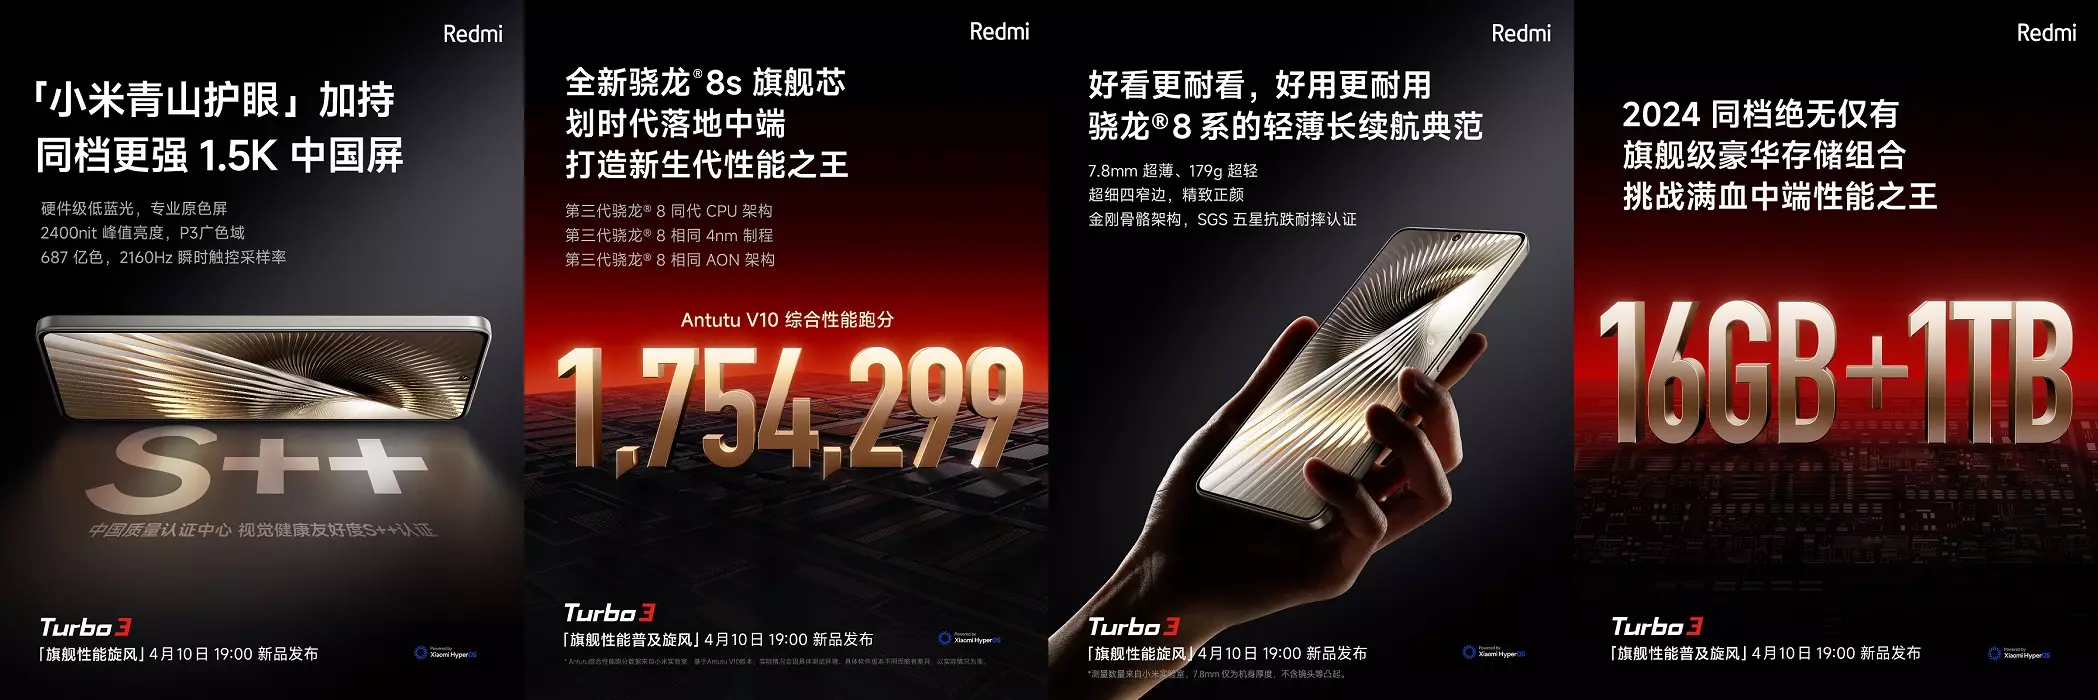 Redmi Turbo 3 features cn.